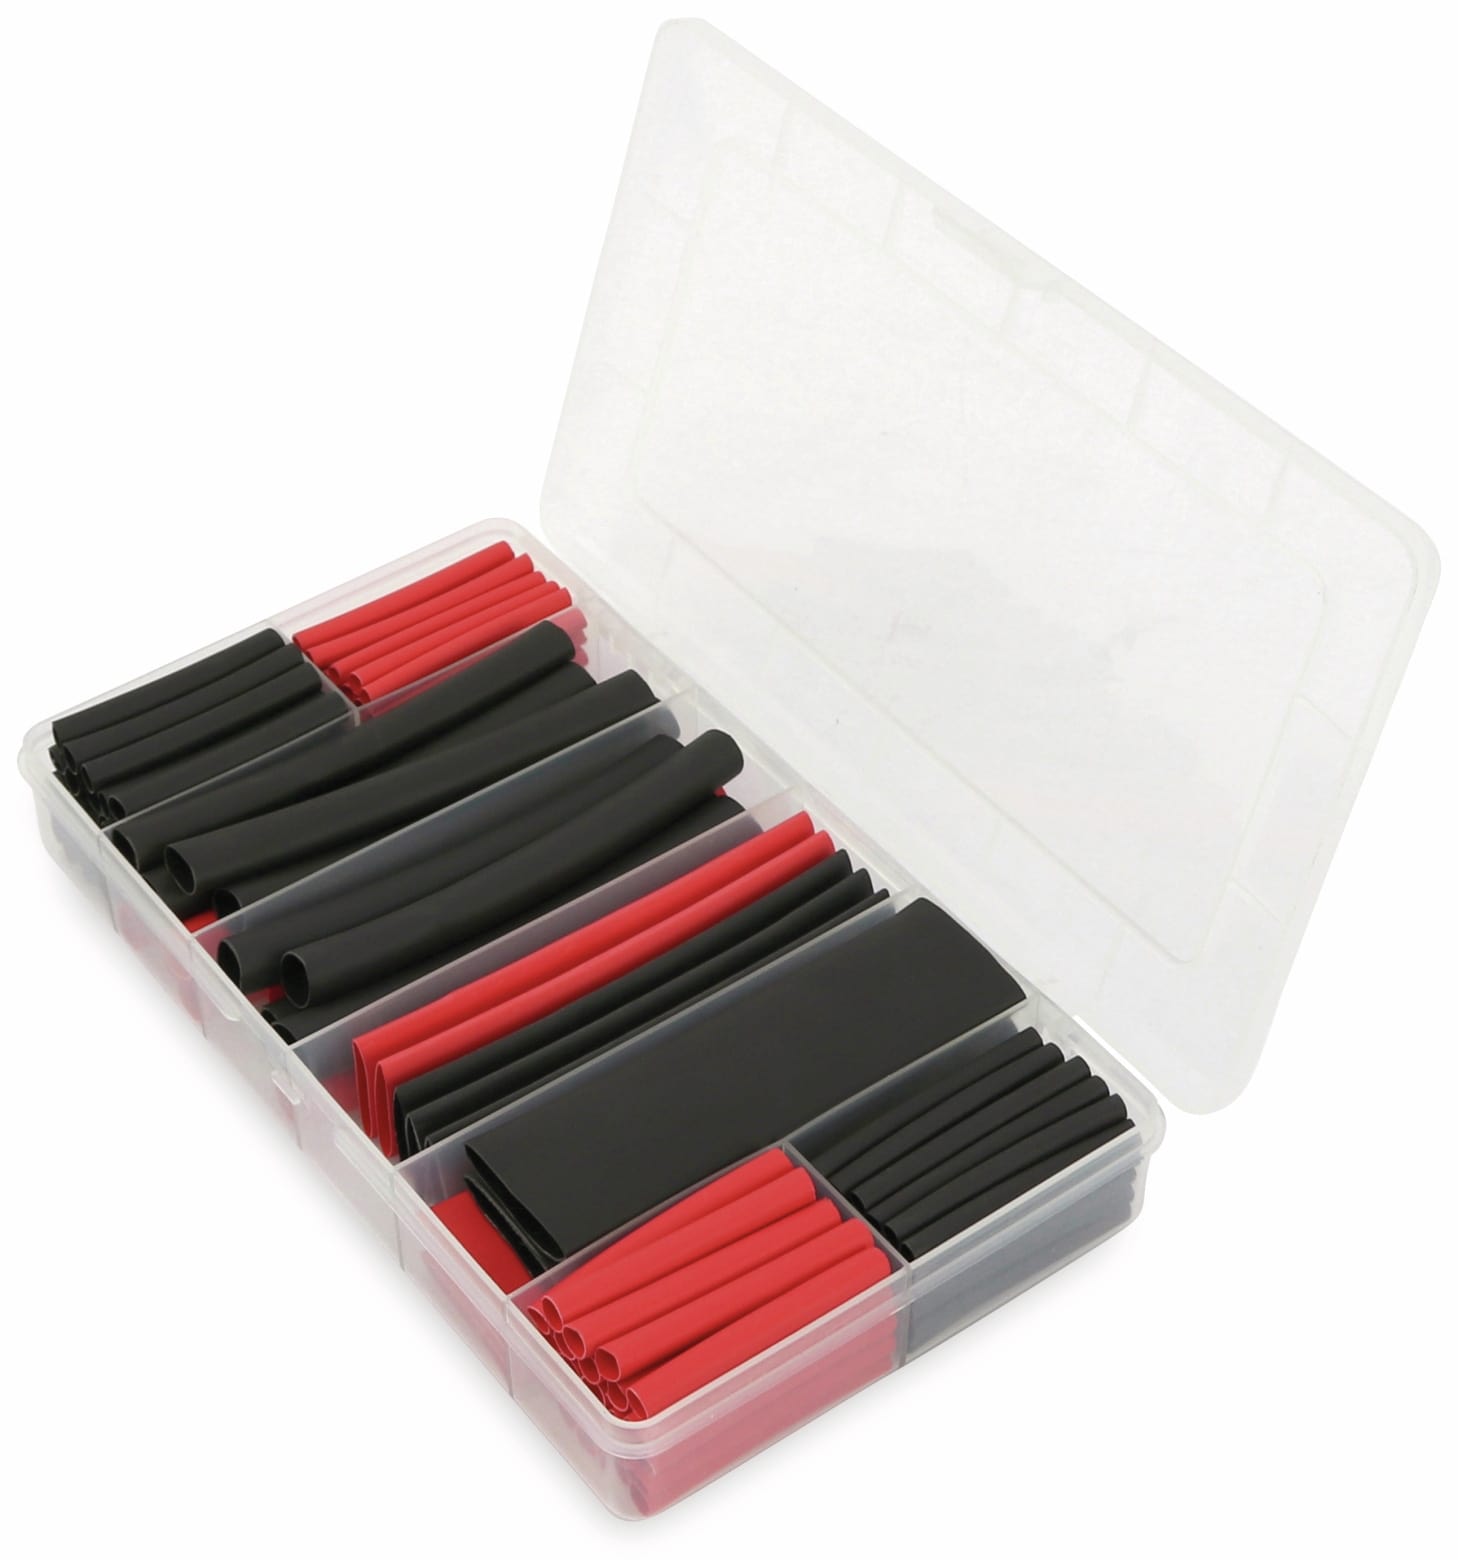 Schrumpfschlauch-Sortiment, 142-teilig Plastikbox, klebend, Schrumpfrate 3:1, schwarz+rot